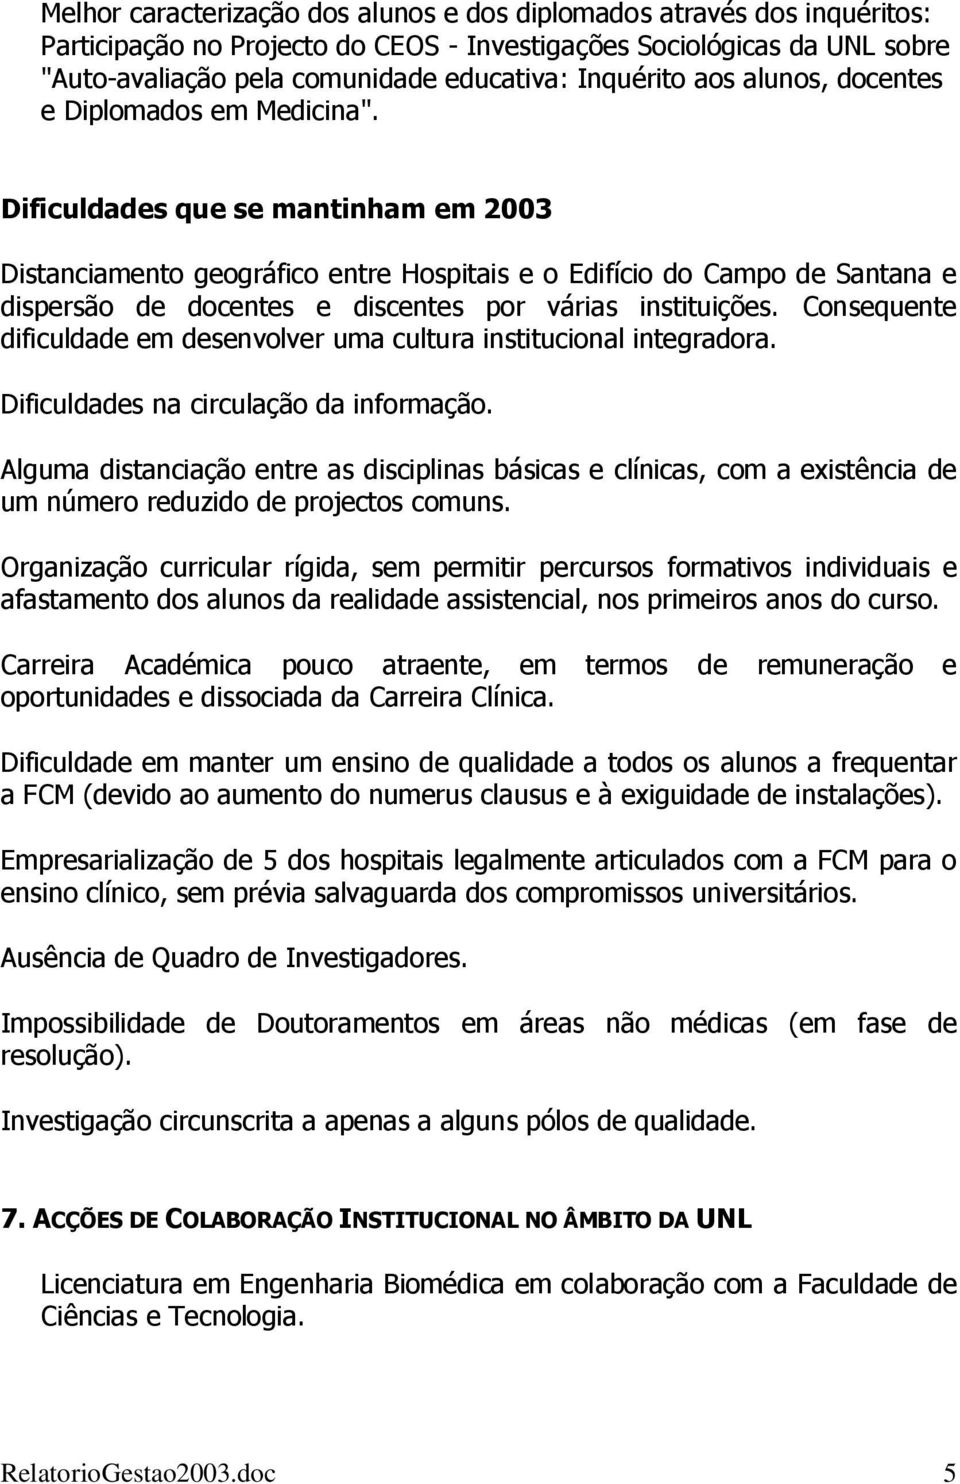 Dificuldades que se mantinham em 2003 Distanciamento geográfico entre Hospitais e o Edifício do Campo de Santana e dispersão de docentes e discentes por várias instituições.